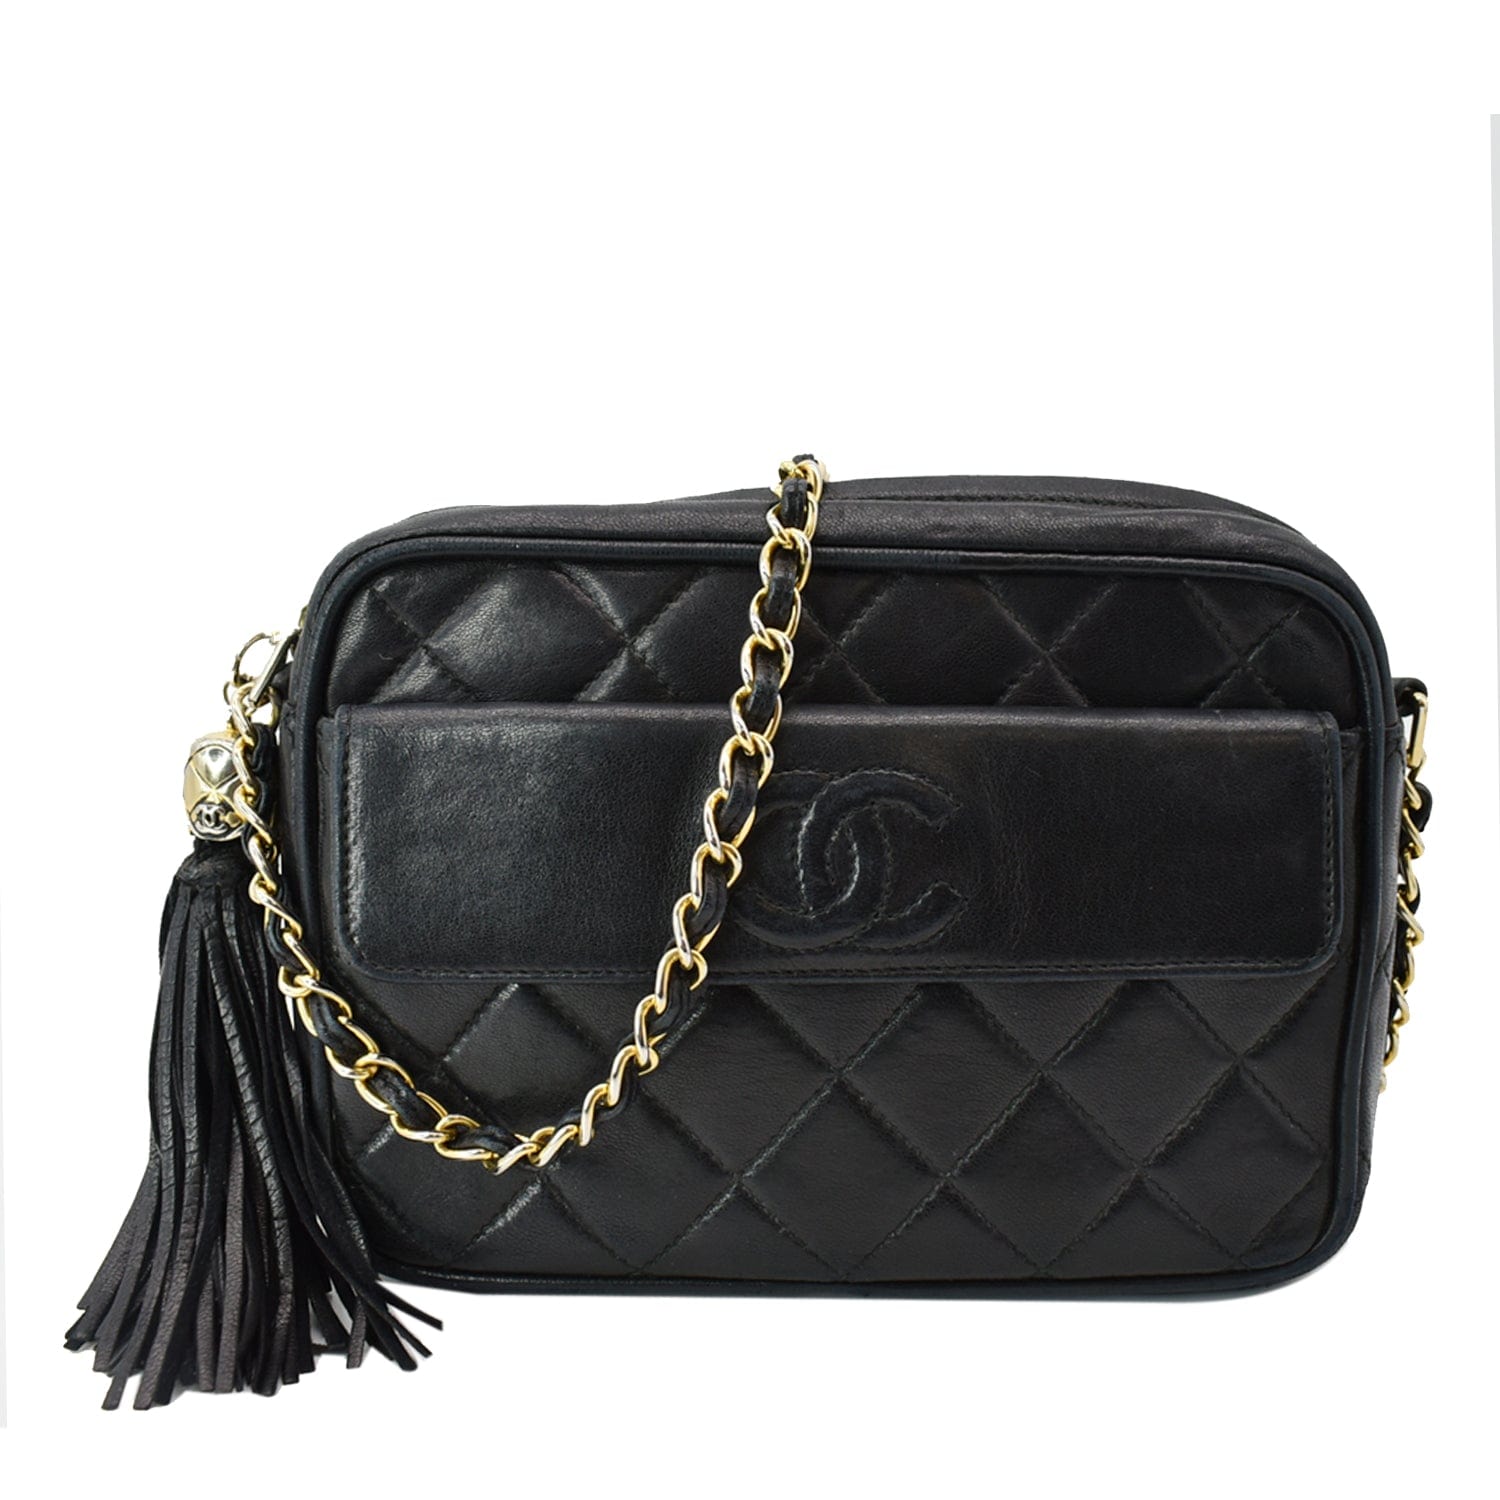 Chanel Vintage Camera Bag in Black Lambskin and 24K GHW – Brands Lover